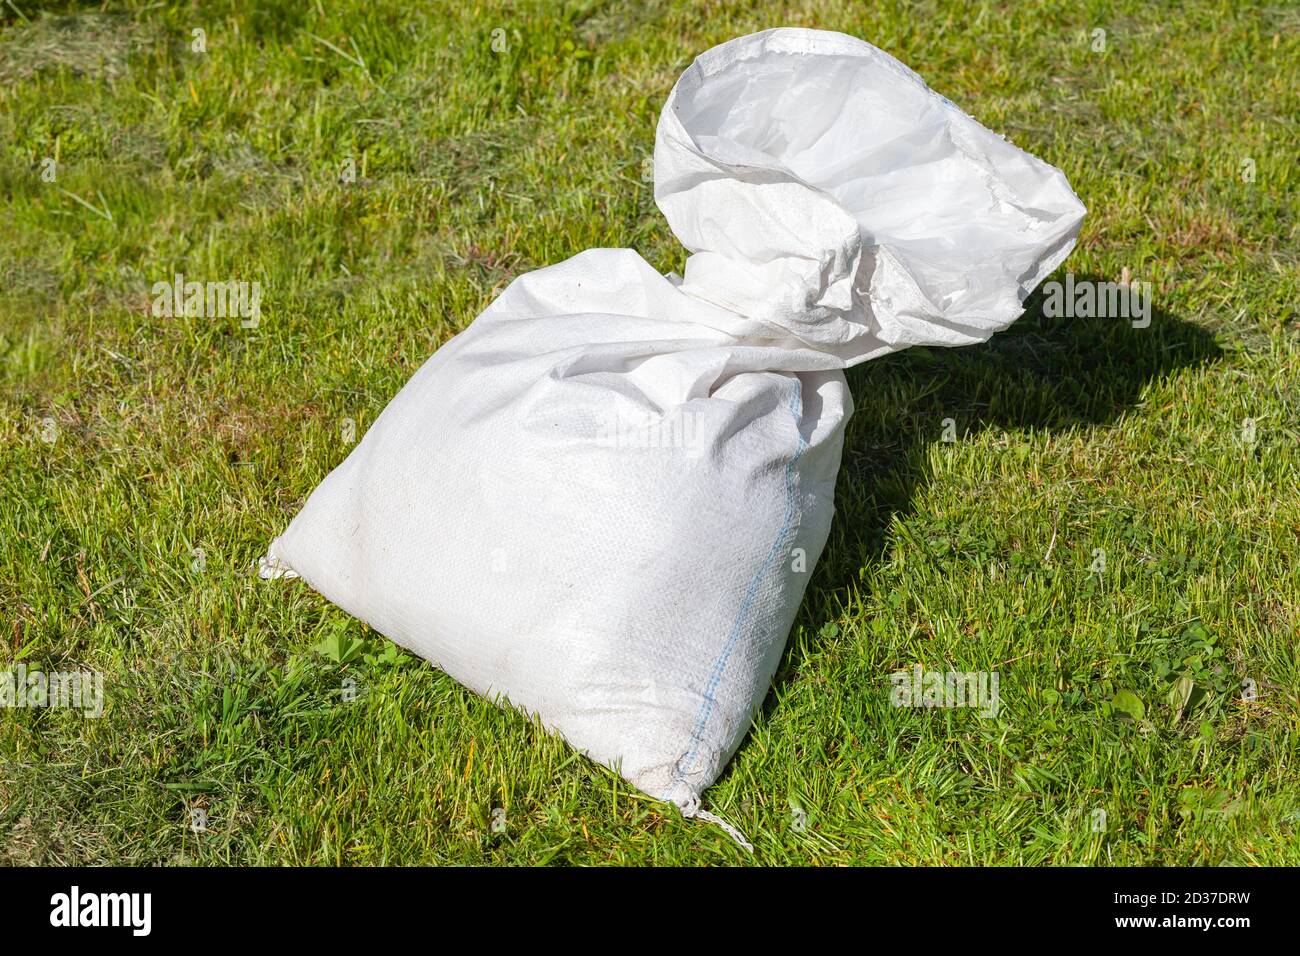 Le sac en polypropylène blanc à moitié vide repose sur l'herbe verte à jour ensoleillé Banque D'Images